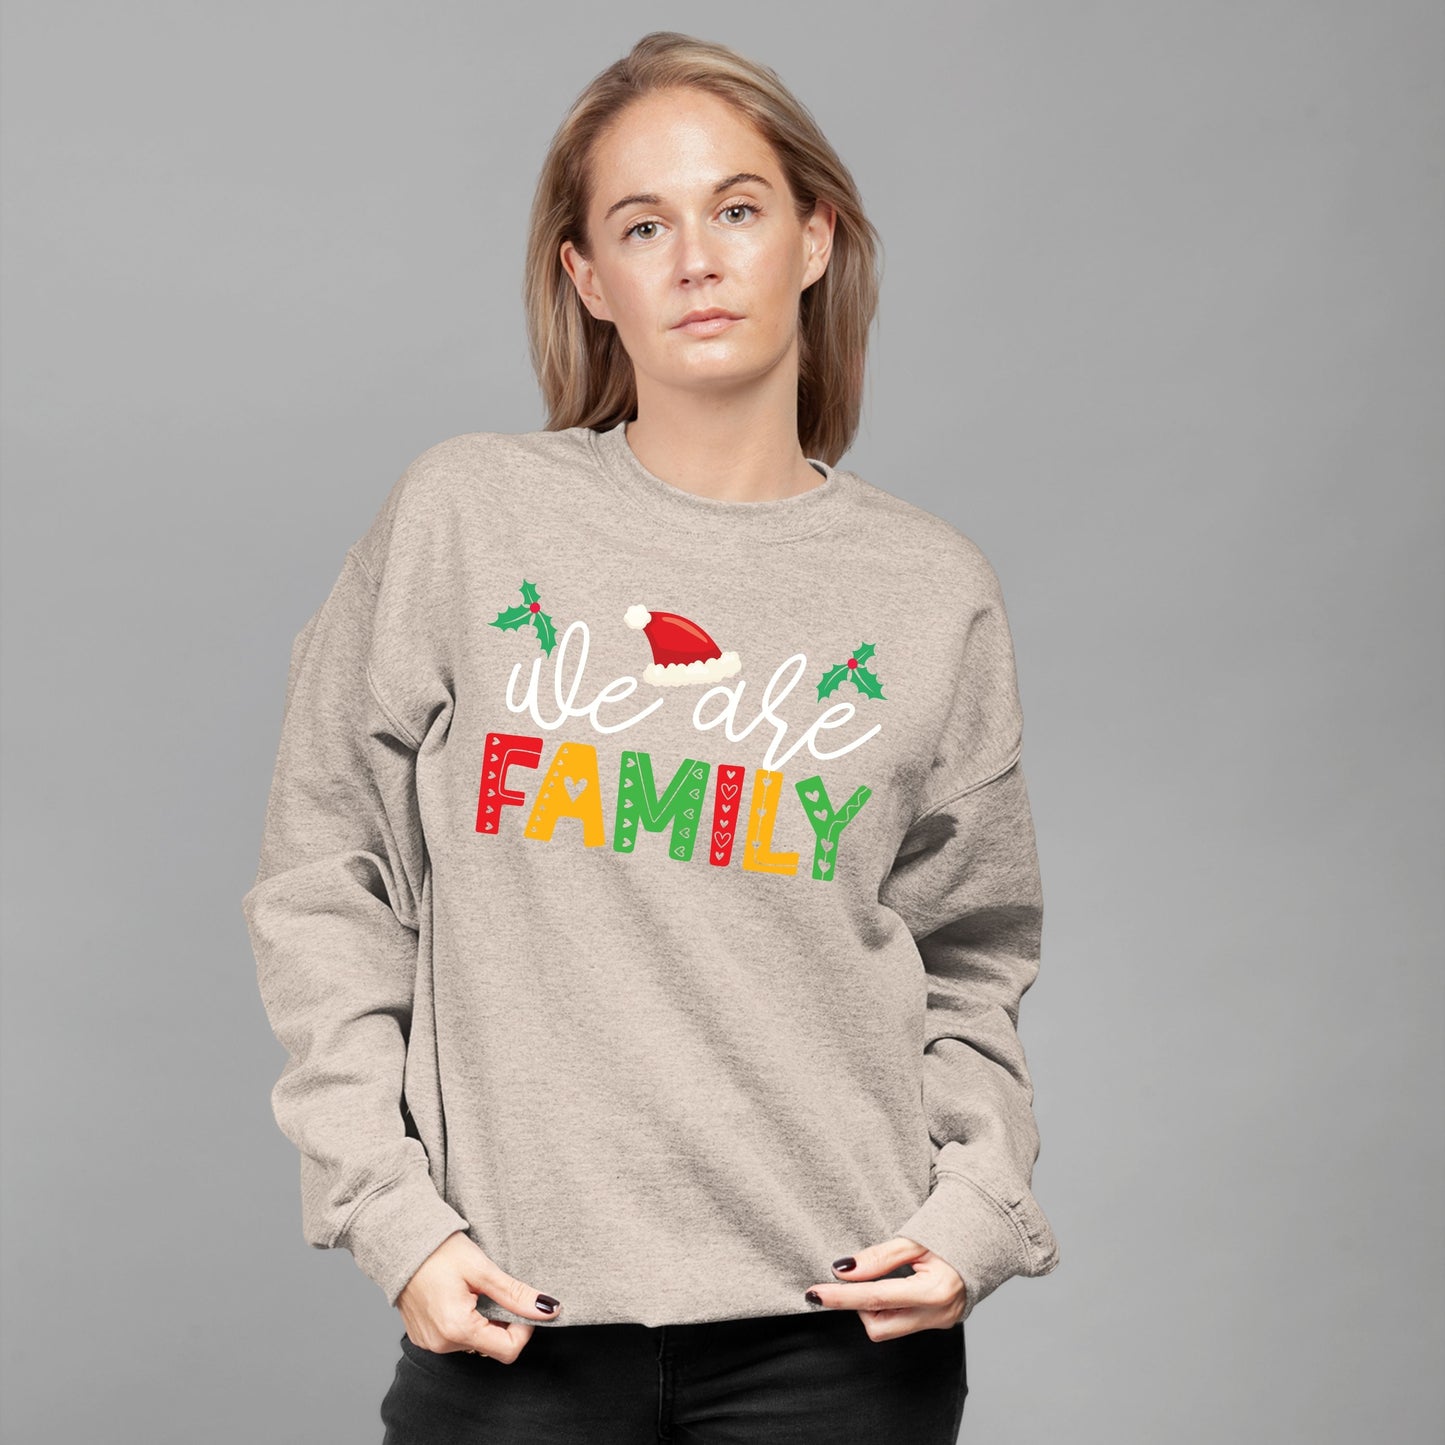 We Are Family, Christmas Long Sleeves, Christmas Sweater, Christmas Crewneck For Youth, Christmas Present, Christmas Sweatshirt